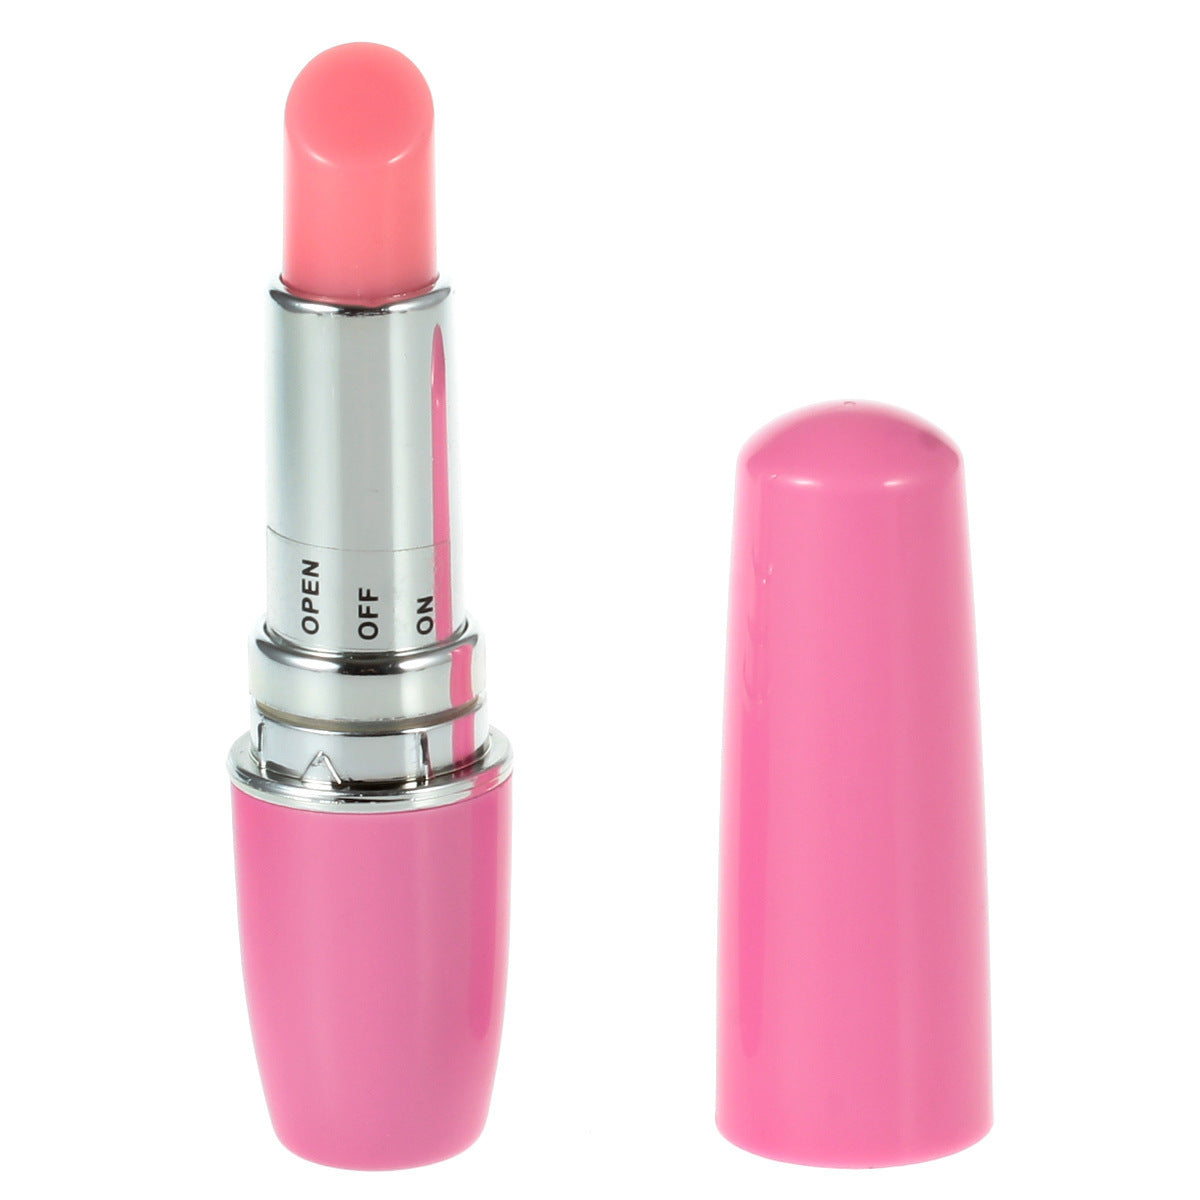 Lipstick Vibrator - AAA Battery